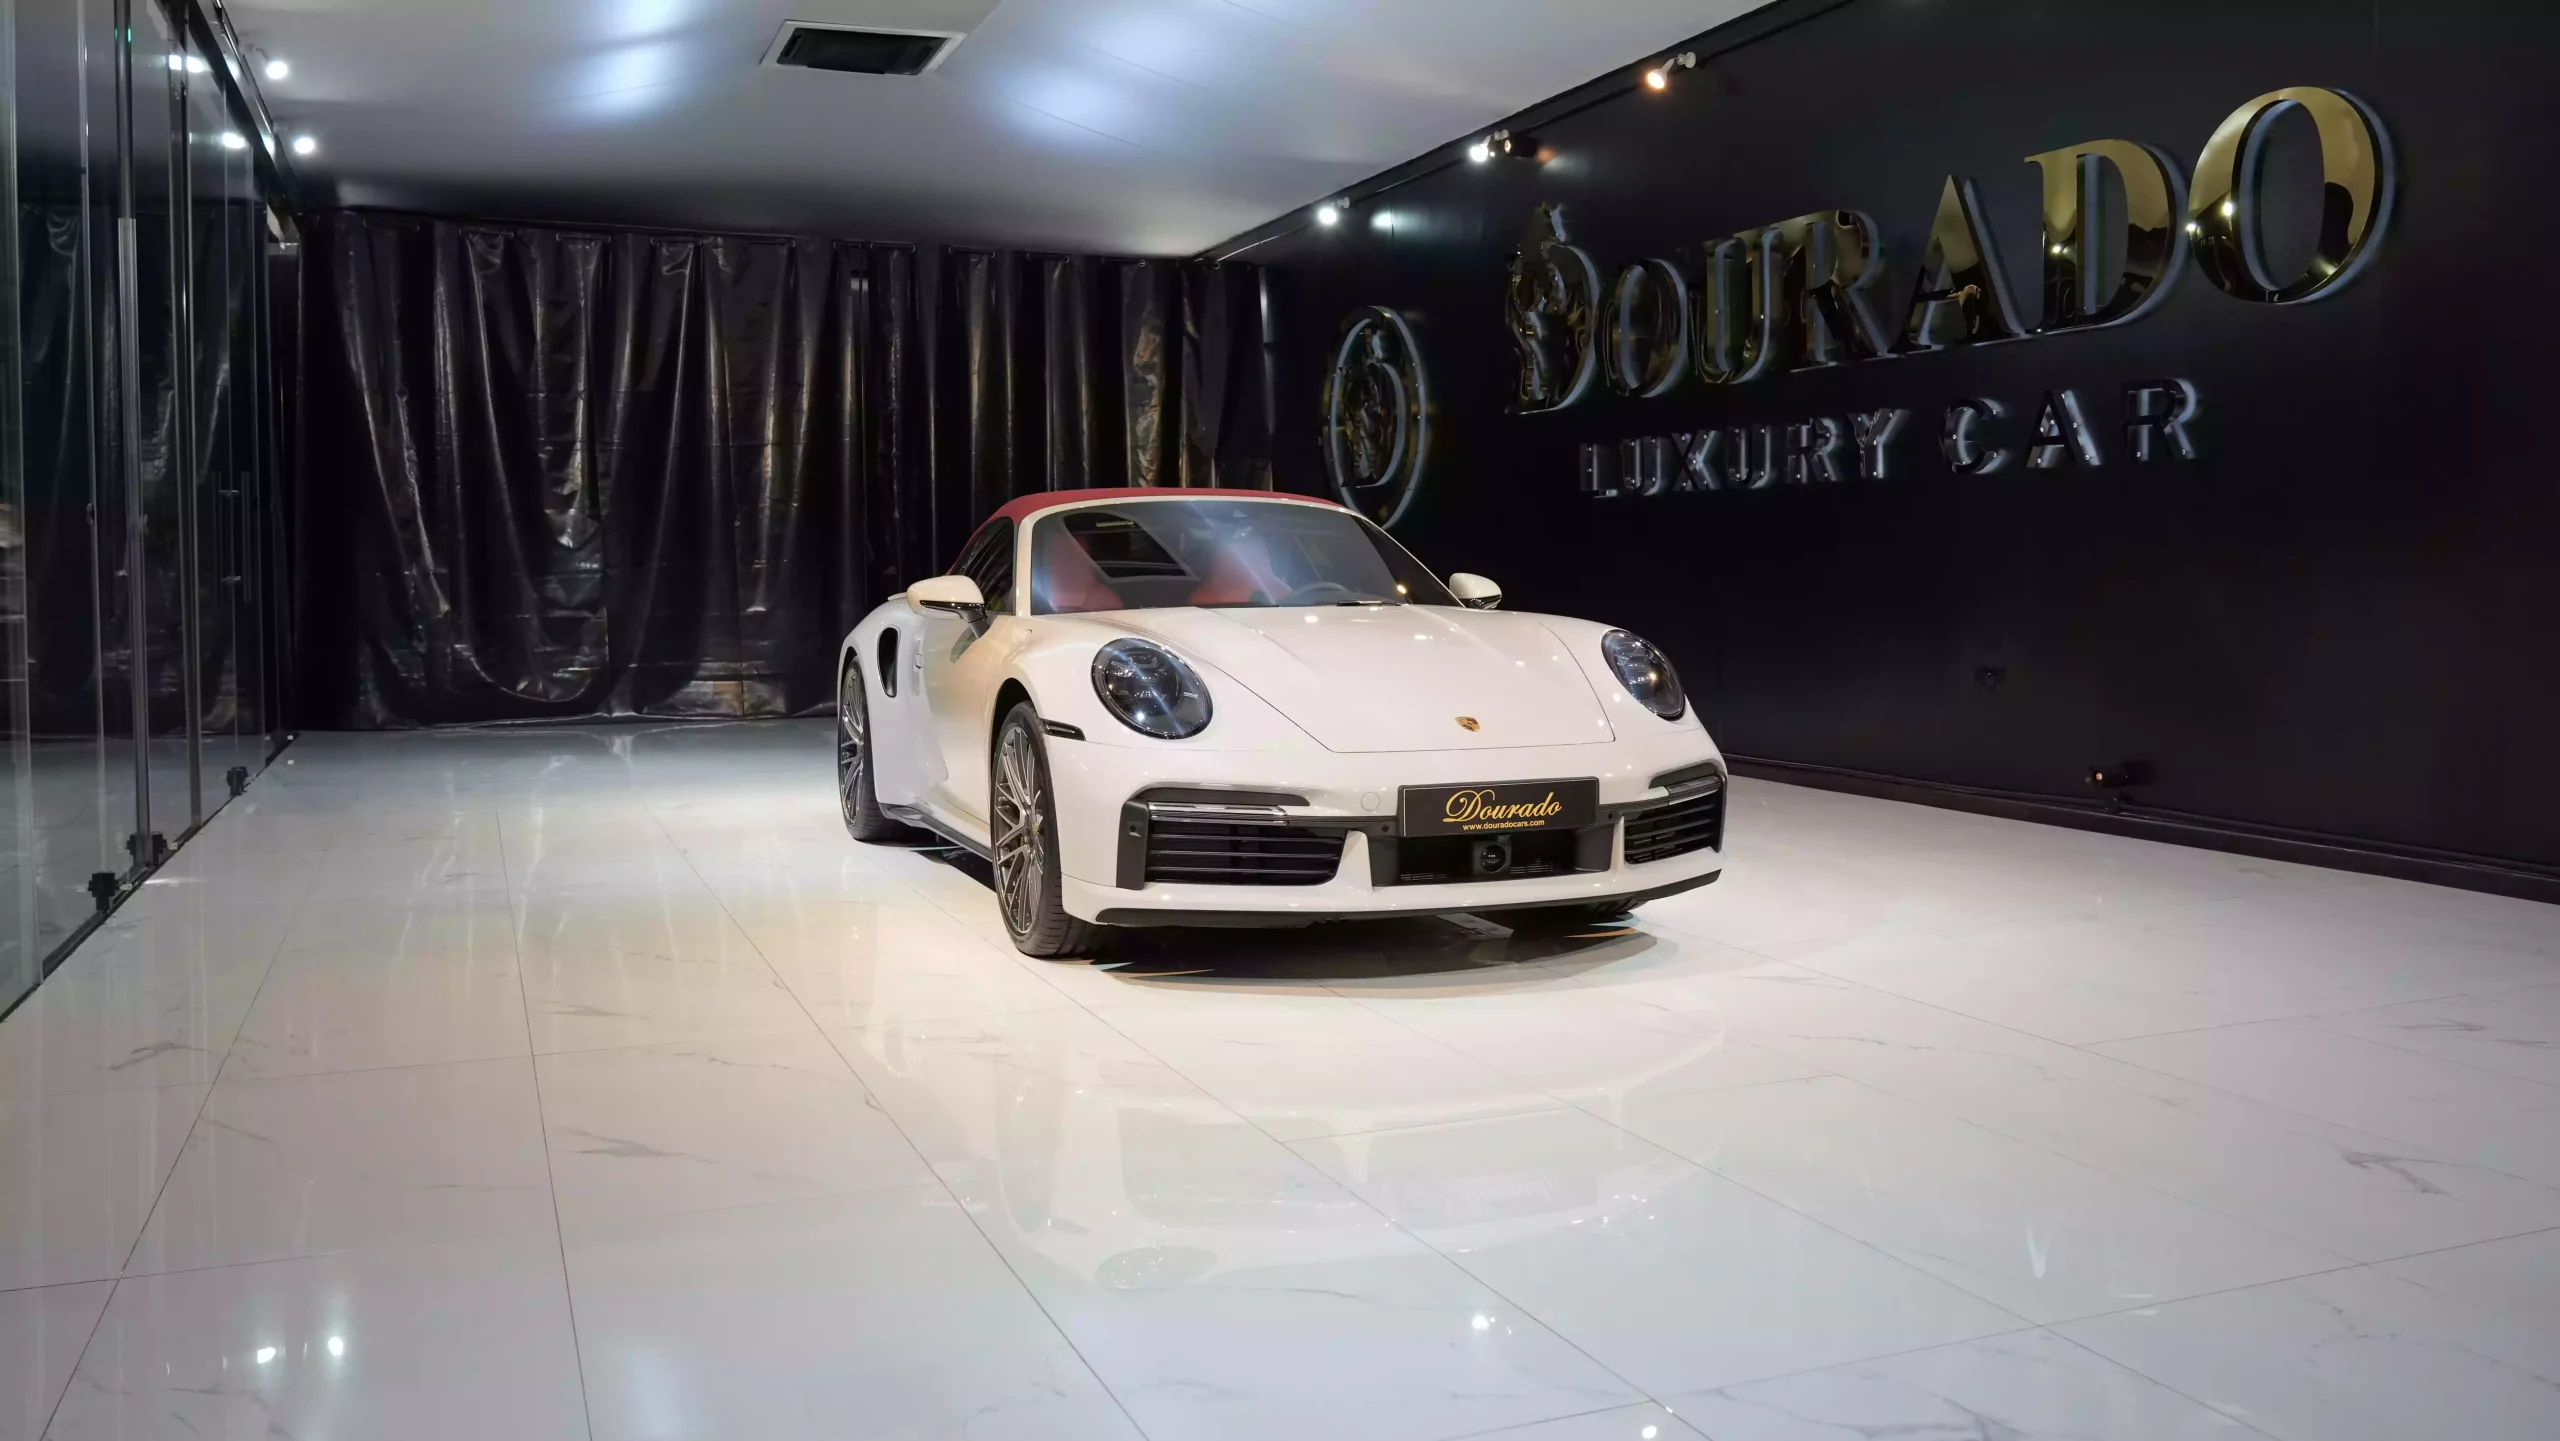 Porsche exotic car for Sale Dubai